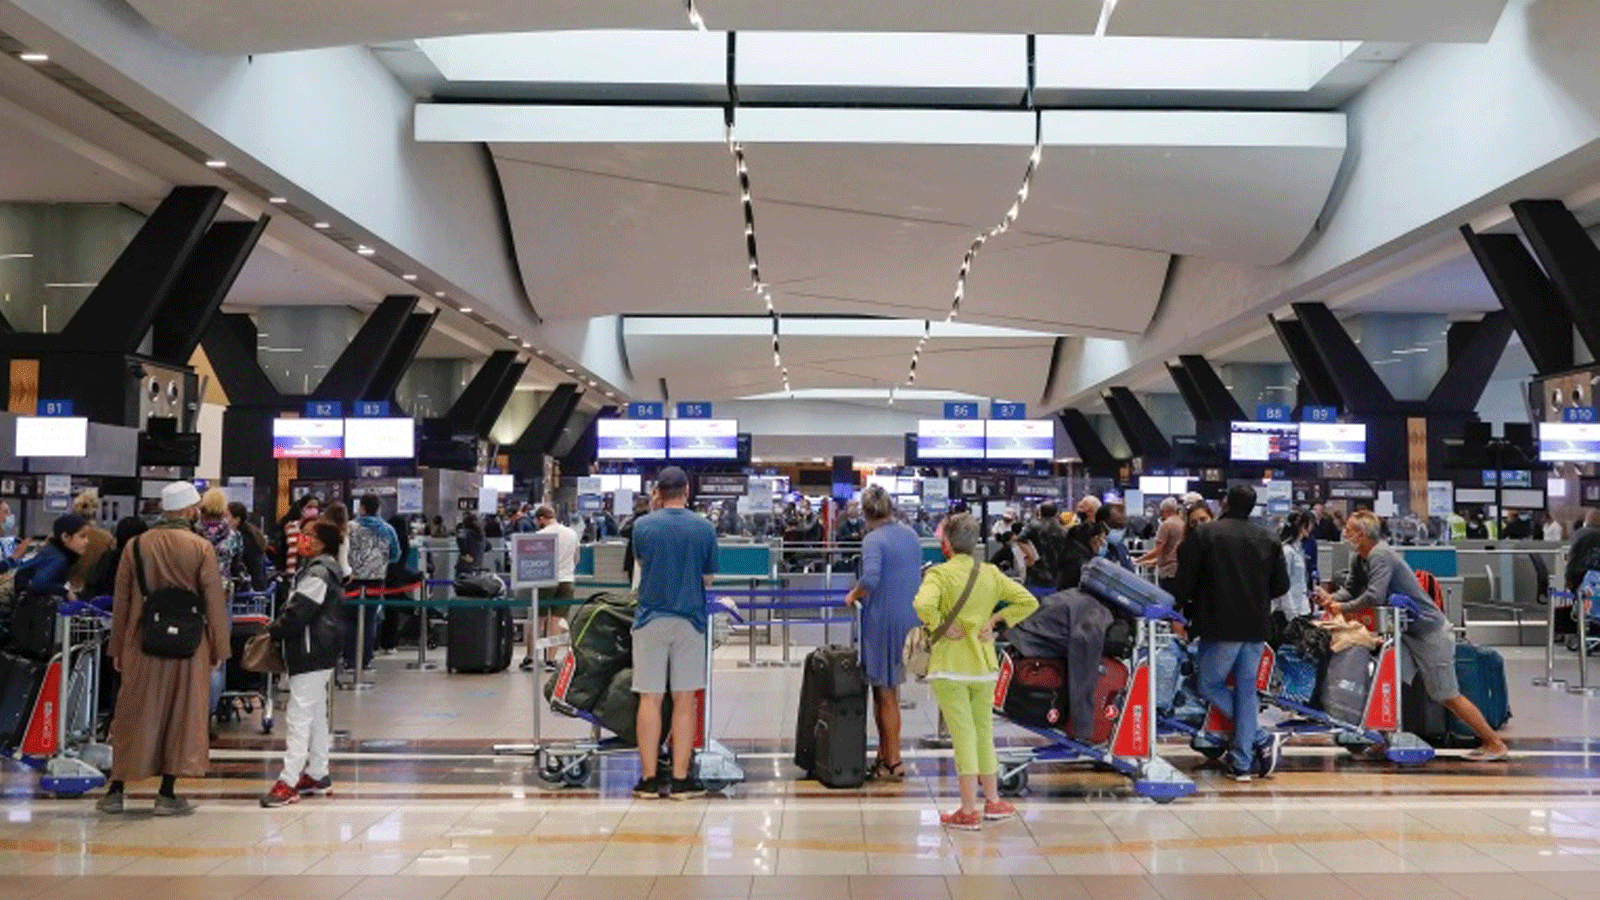 المسافرون يصطفون عند مكتب تسجيل الوصول في مطار أو آر تامبو الدولي في جوهانسبرج بعد أن حظرت عدة دول الرحلات الجوية من جنوب أفريقيا